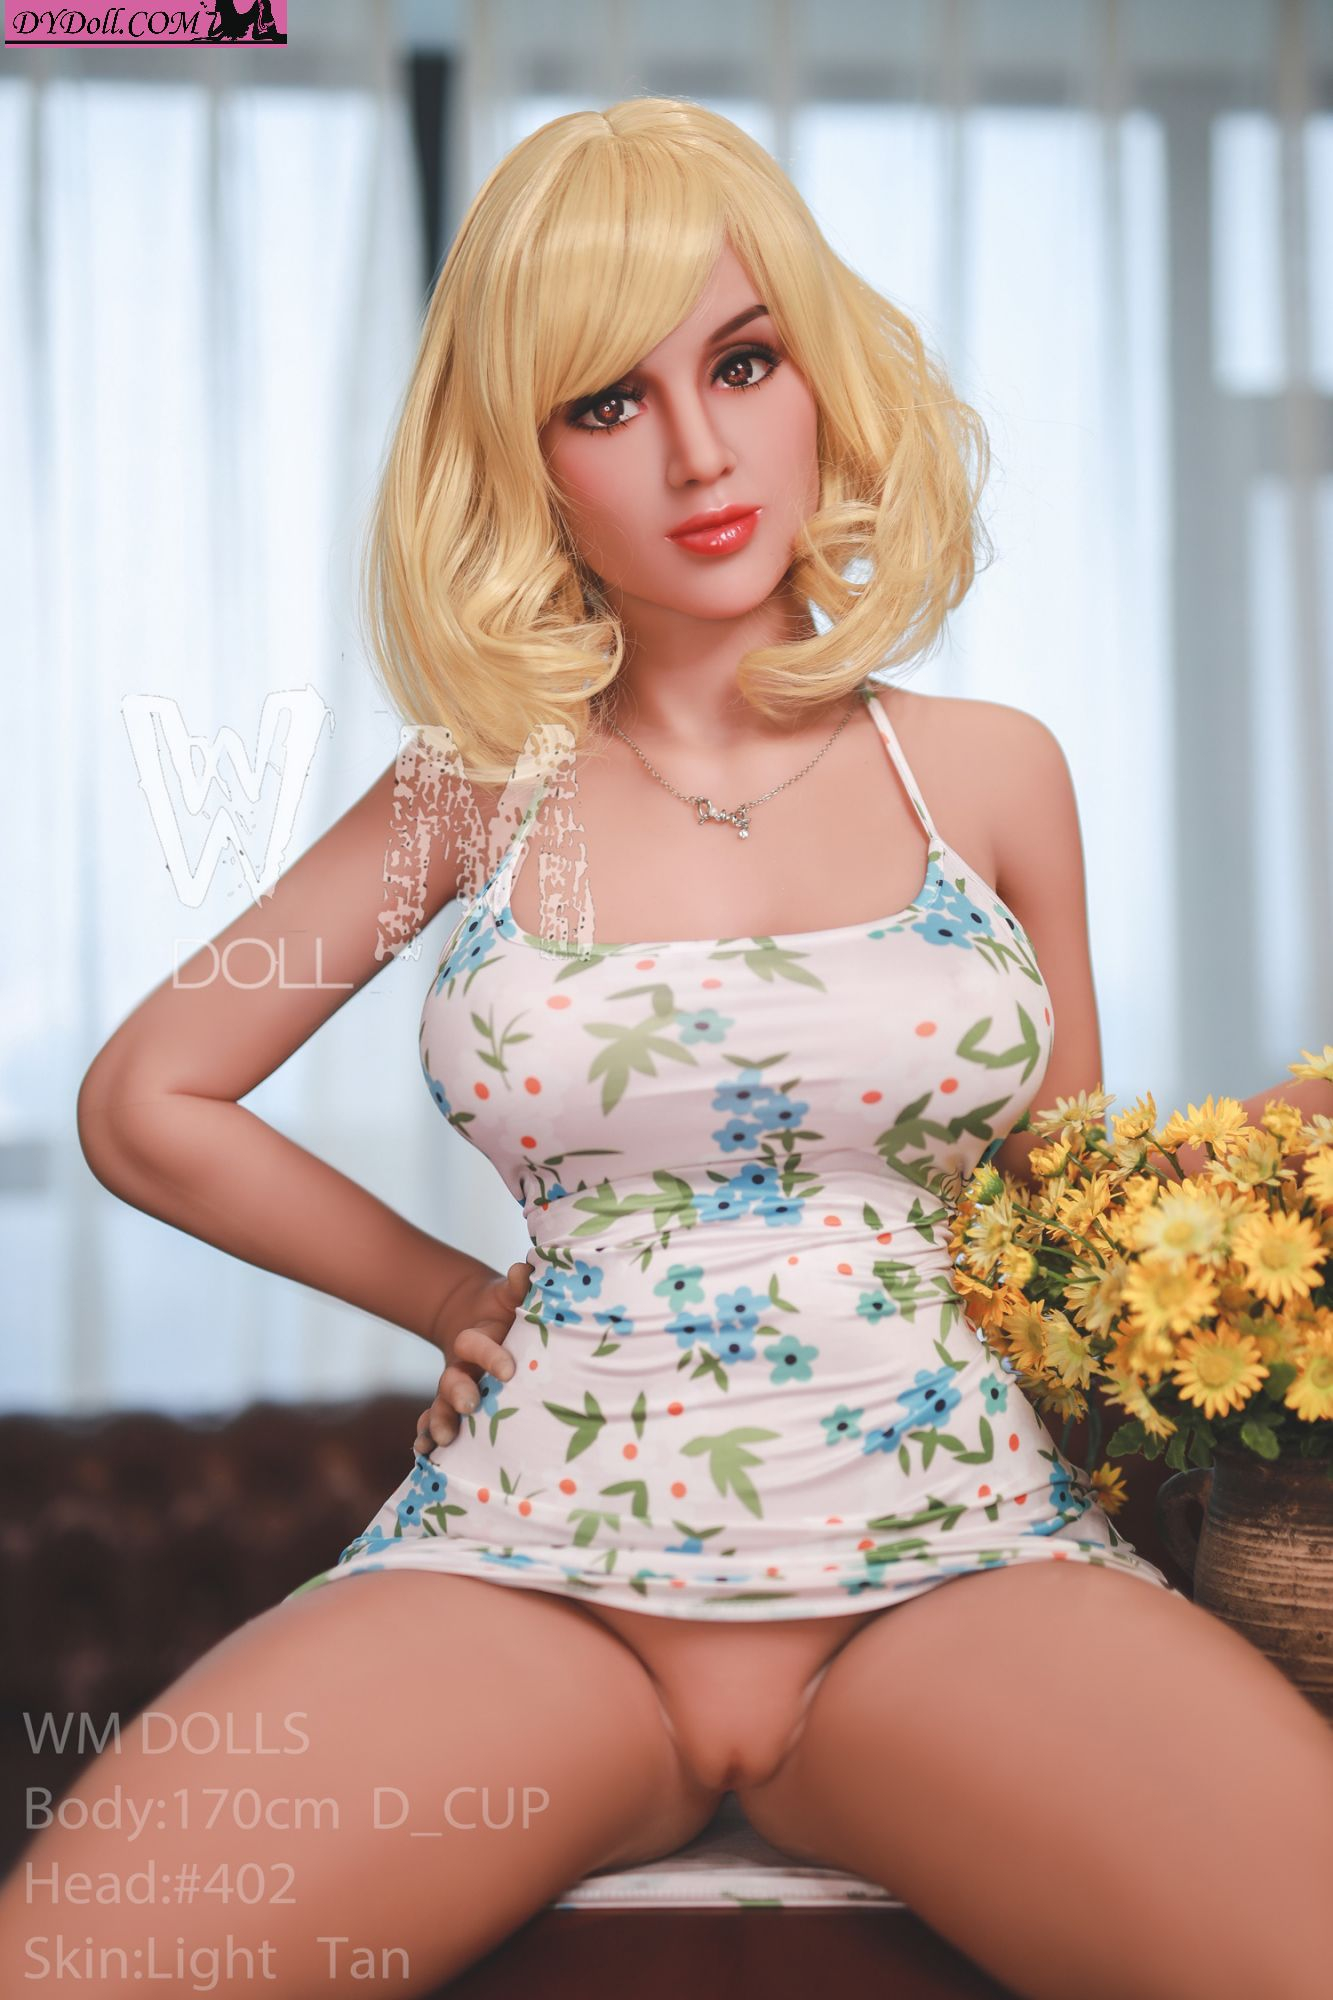 Blonde teen sex doll with curvy body - N